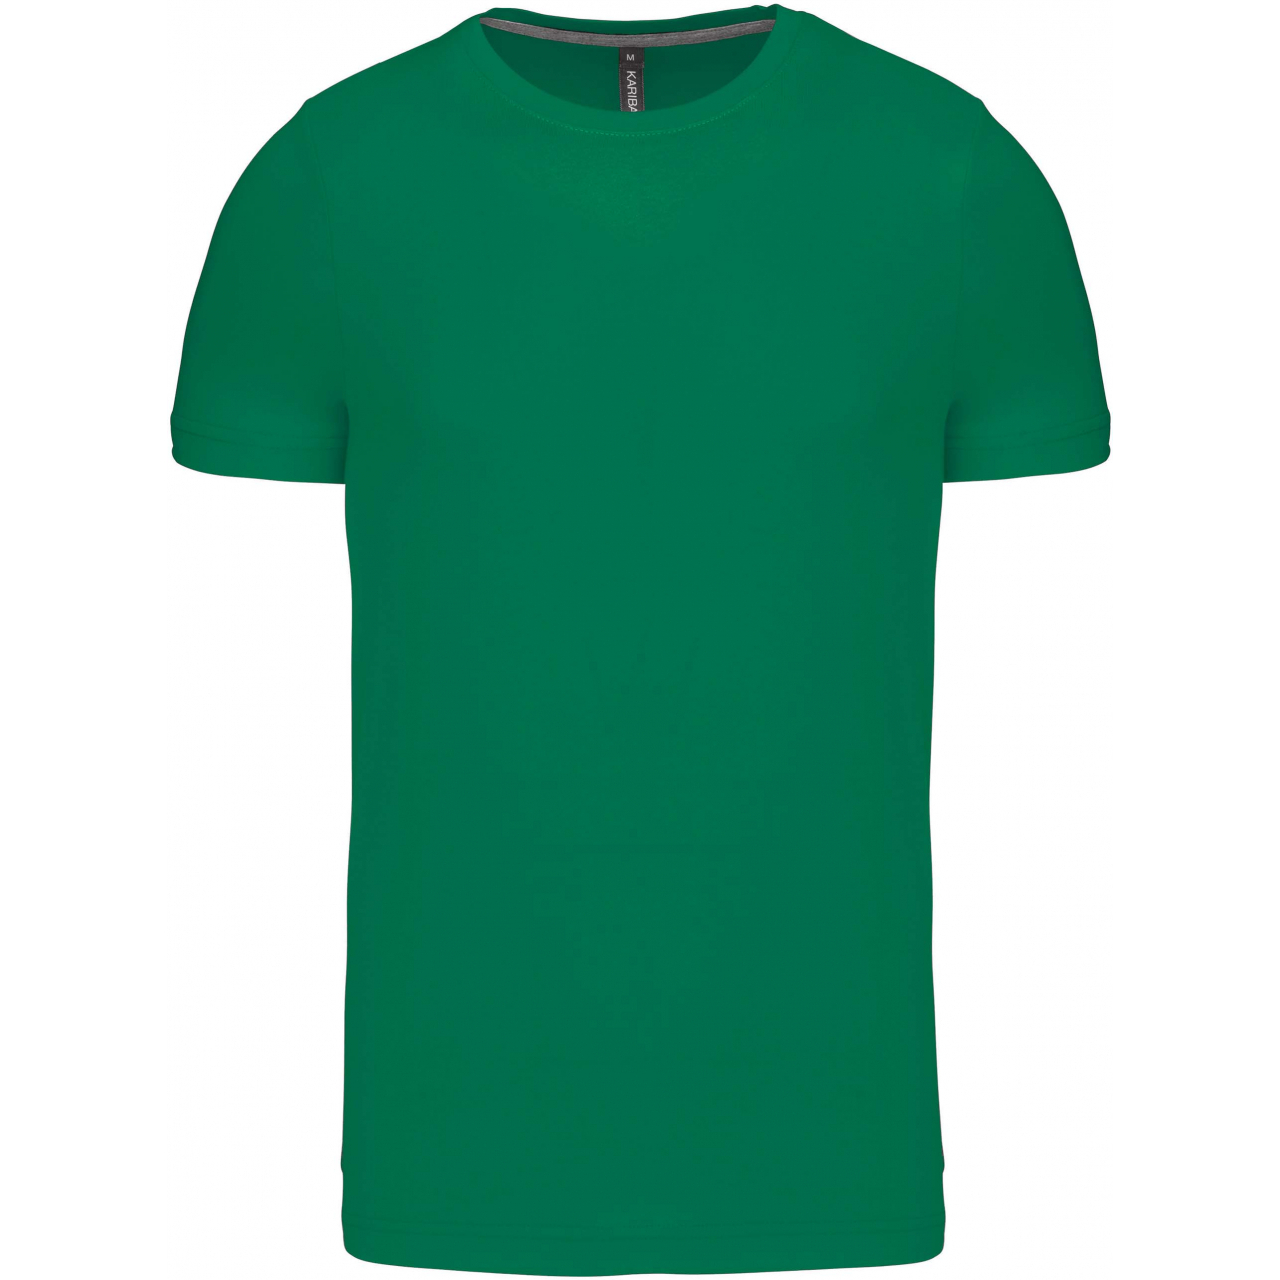 Pánské tričko Kariban krátký rukáv - zelené, S